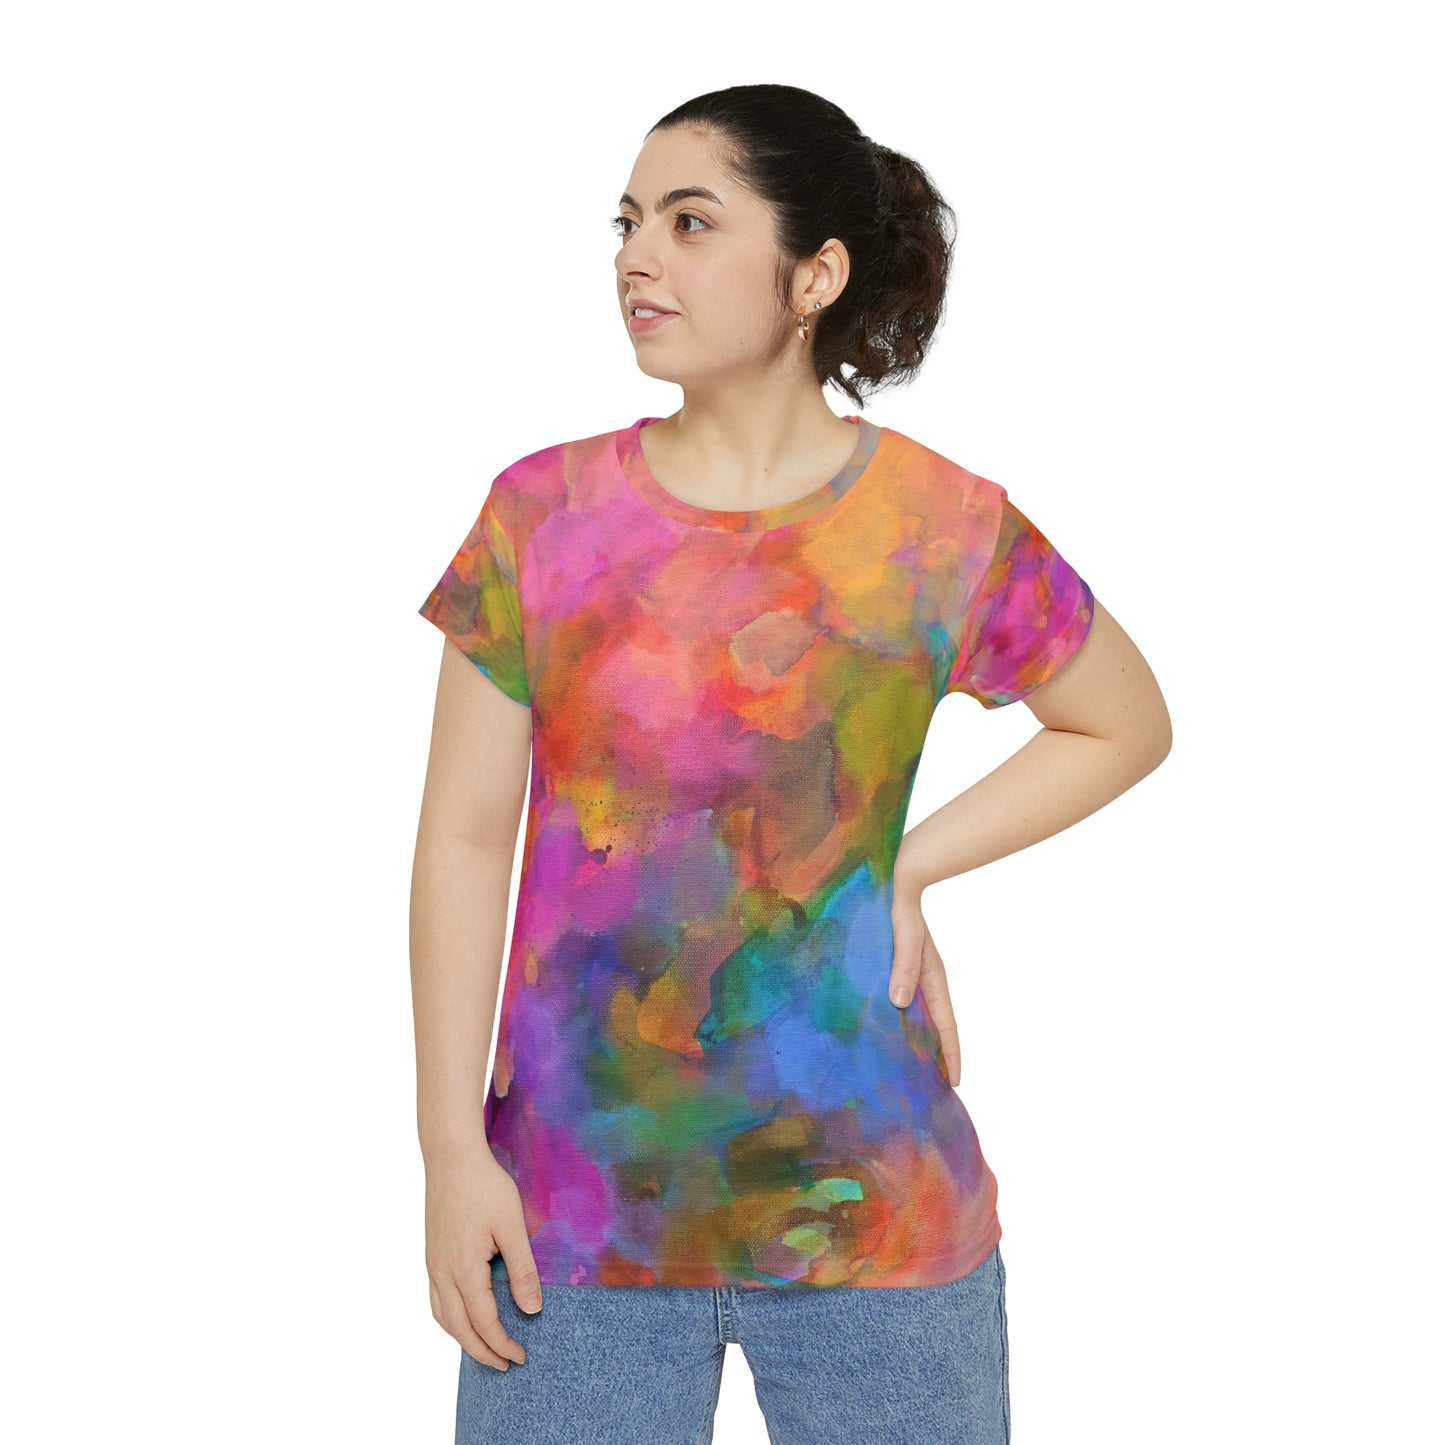 JAT | ART - Women's Short Sleeve Shirt